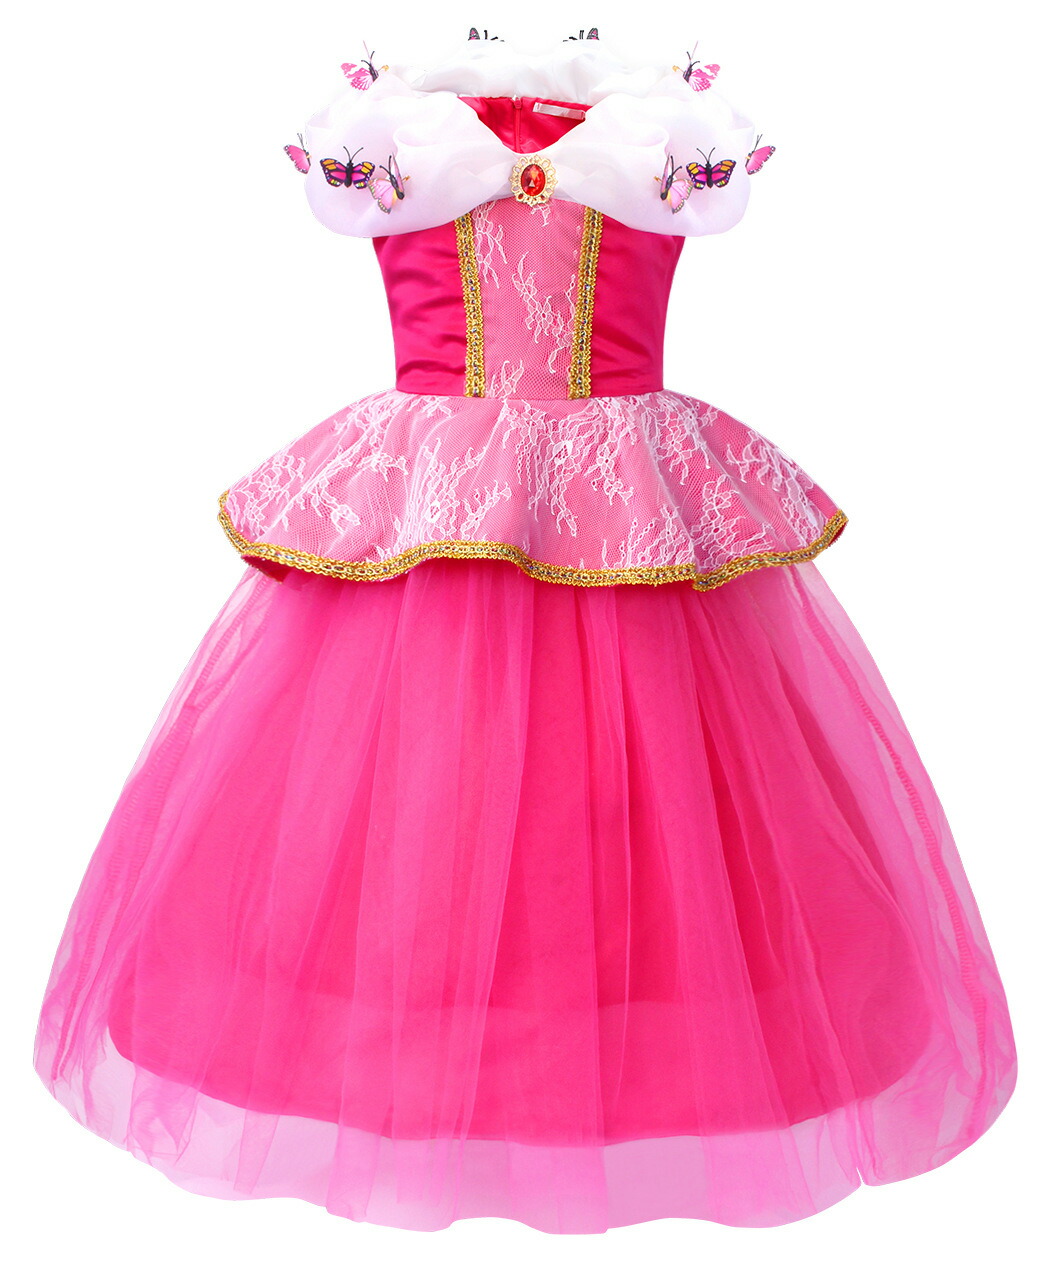 ドレス プリンセス コスチューム 子供 仮装 女の子 コスチューム 衣装 コスプレ プレゼント リトルプリンセス ピンク 078